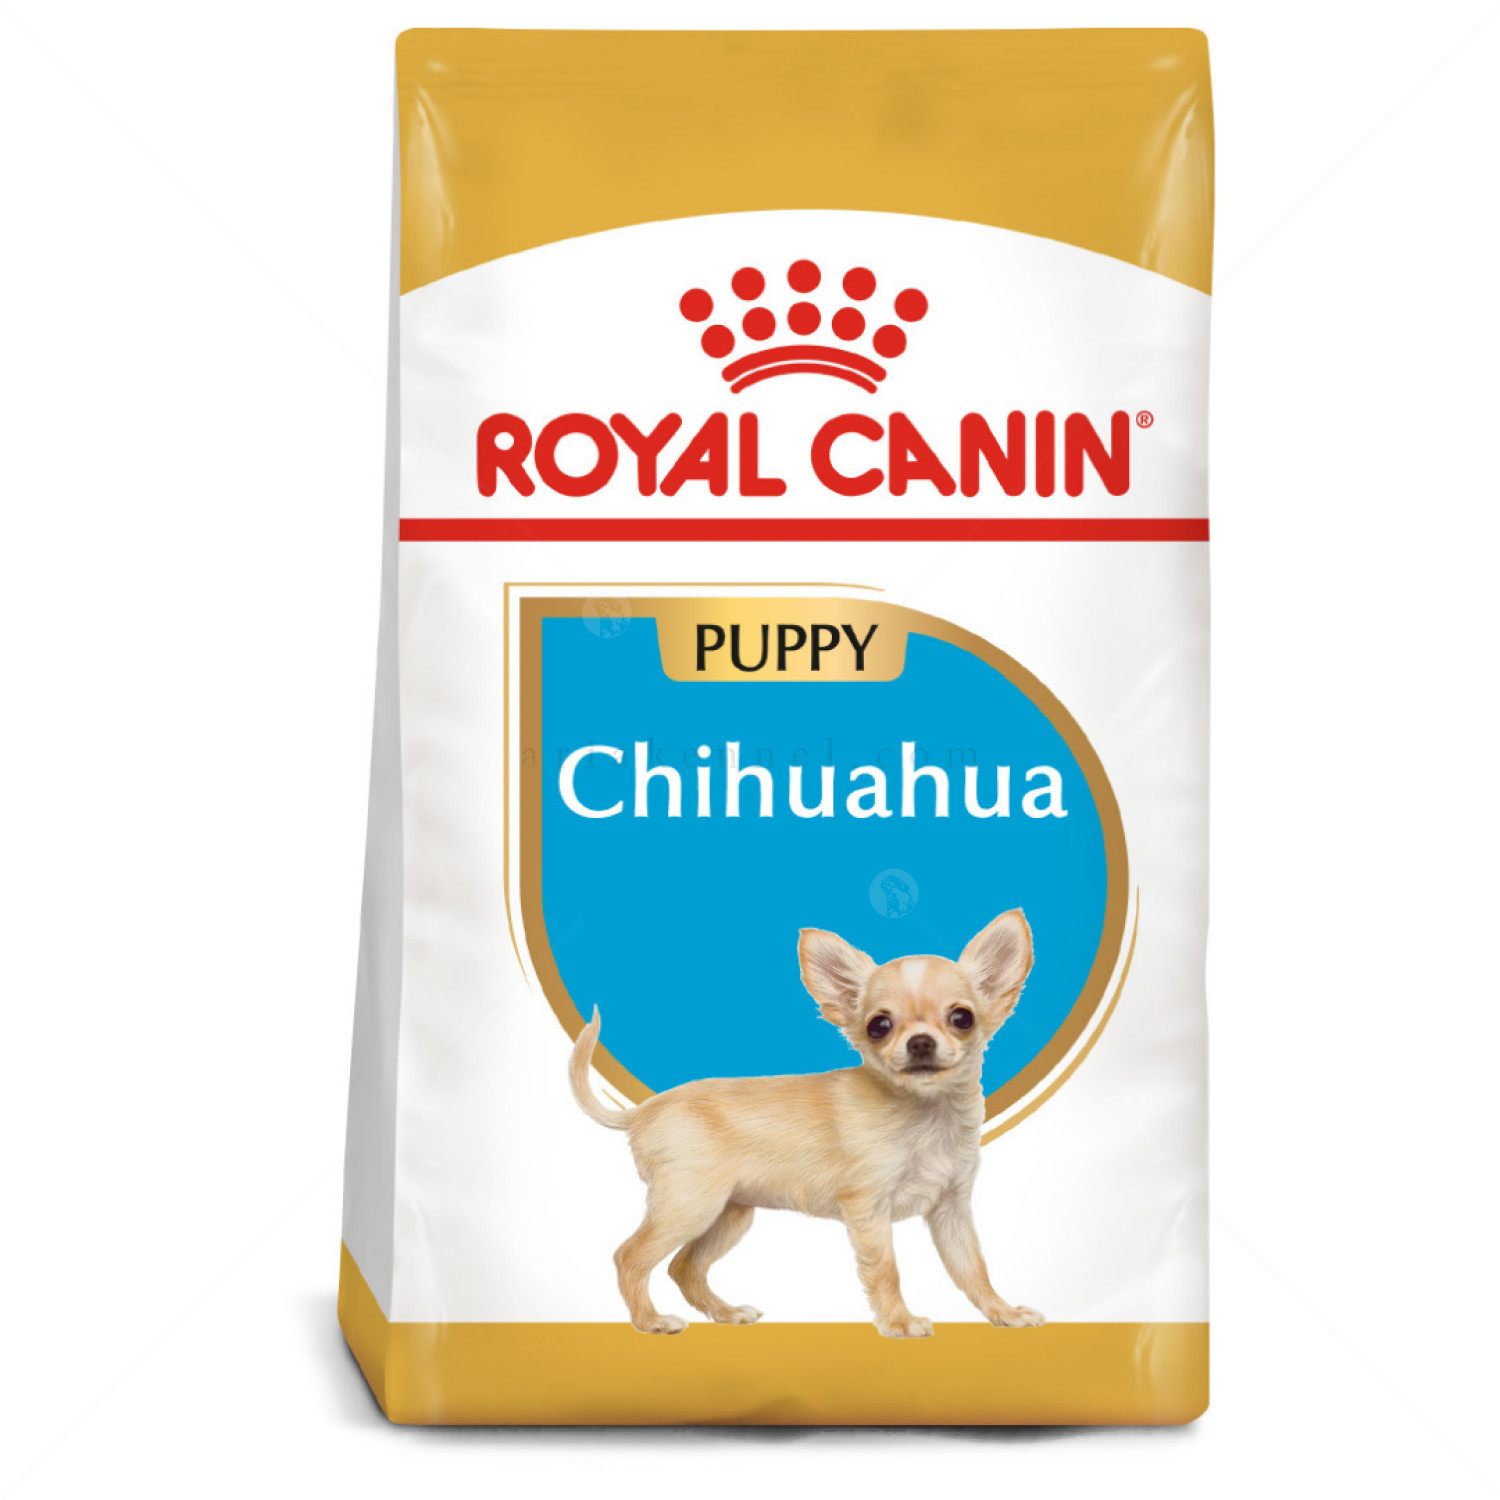 Комплект ROYAL CANIN 0.500 кг. Chihuahua Puppy + ROYAL CANIN 85 гр. Mini puppy пауч + PERRITO 50 гр. Хапки пилешко месо